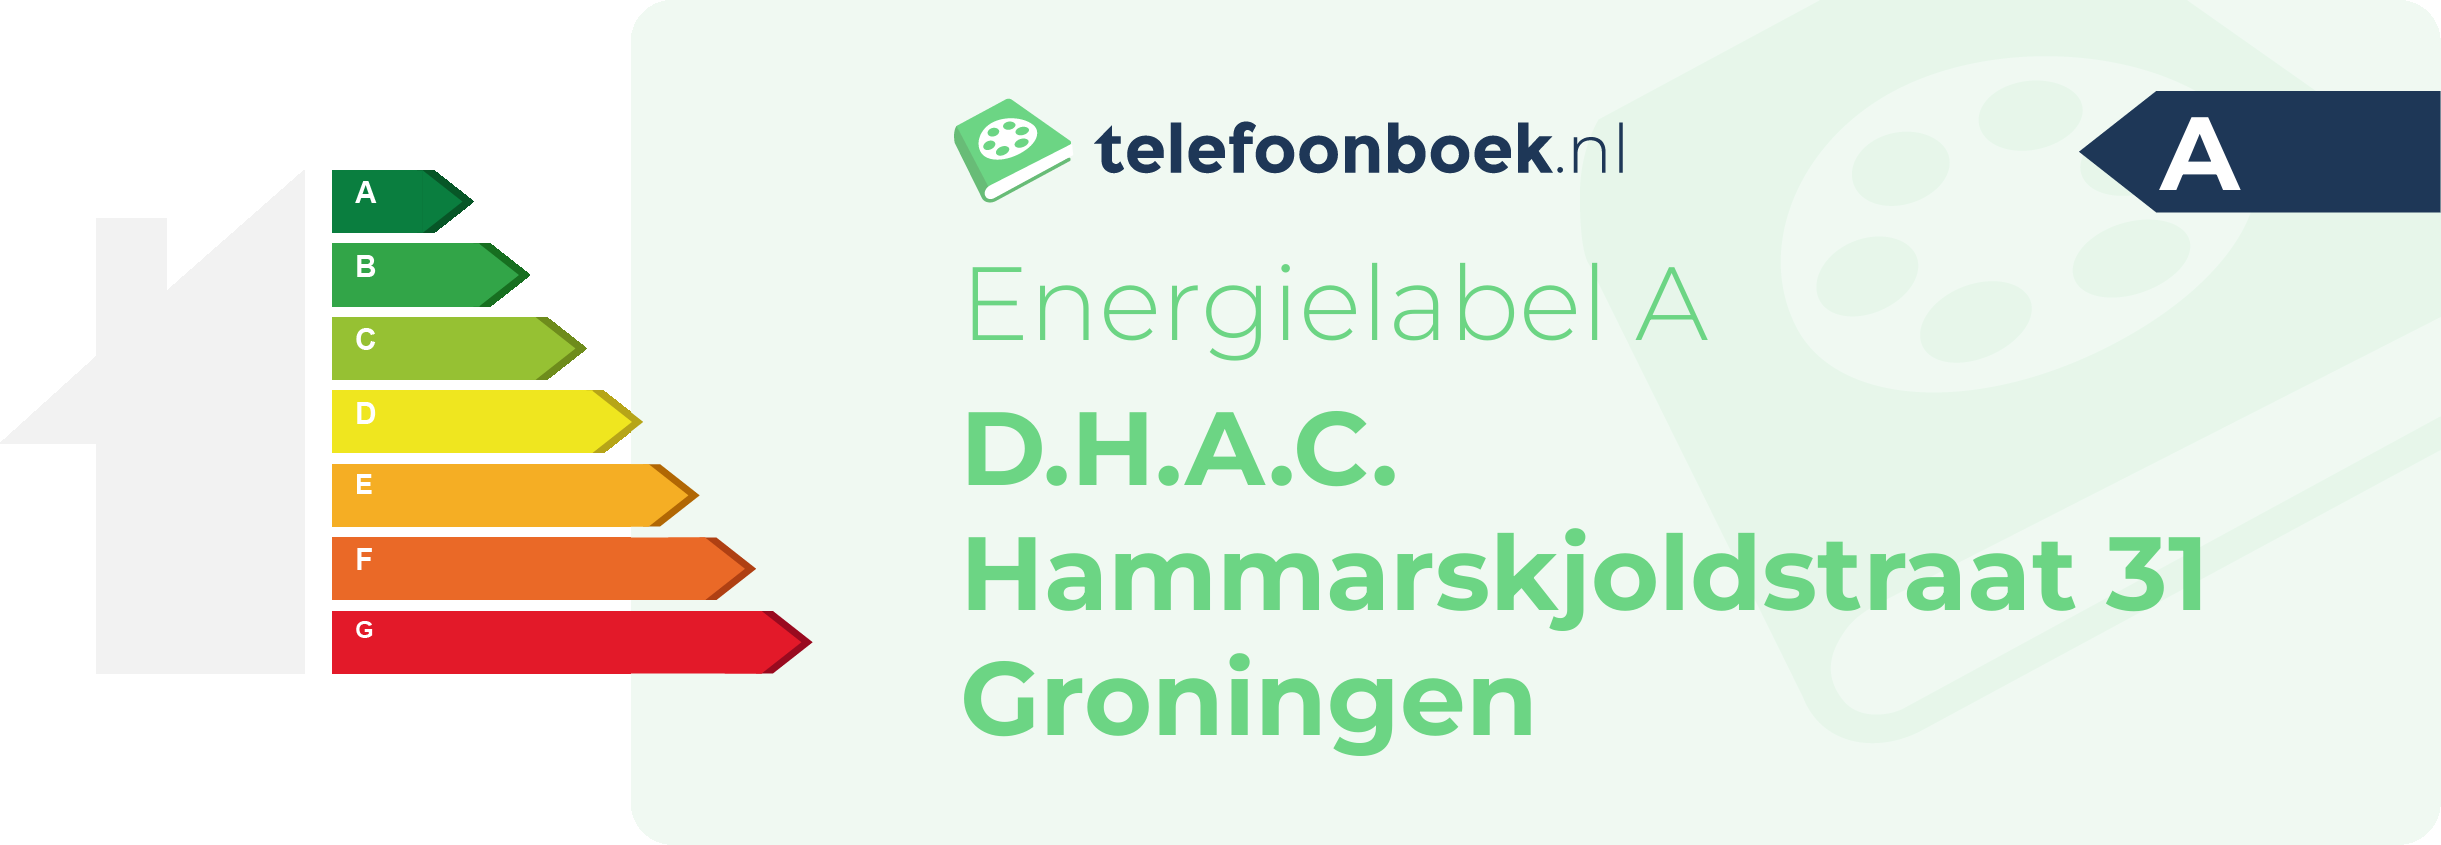 Energielabel D.H.A.C. Hammarskjoldstraat 31 Groningen